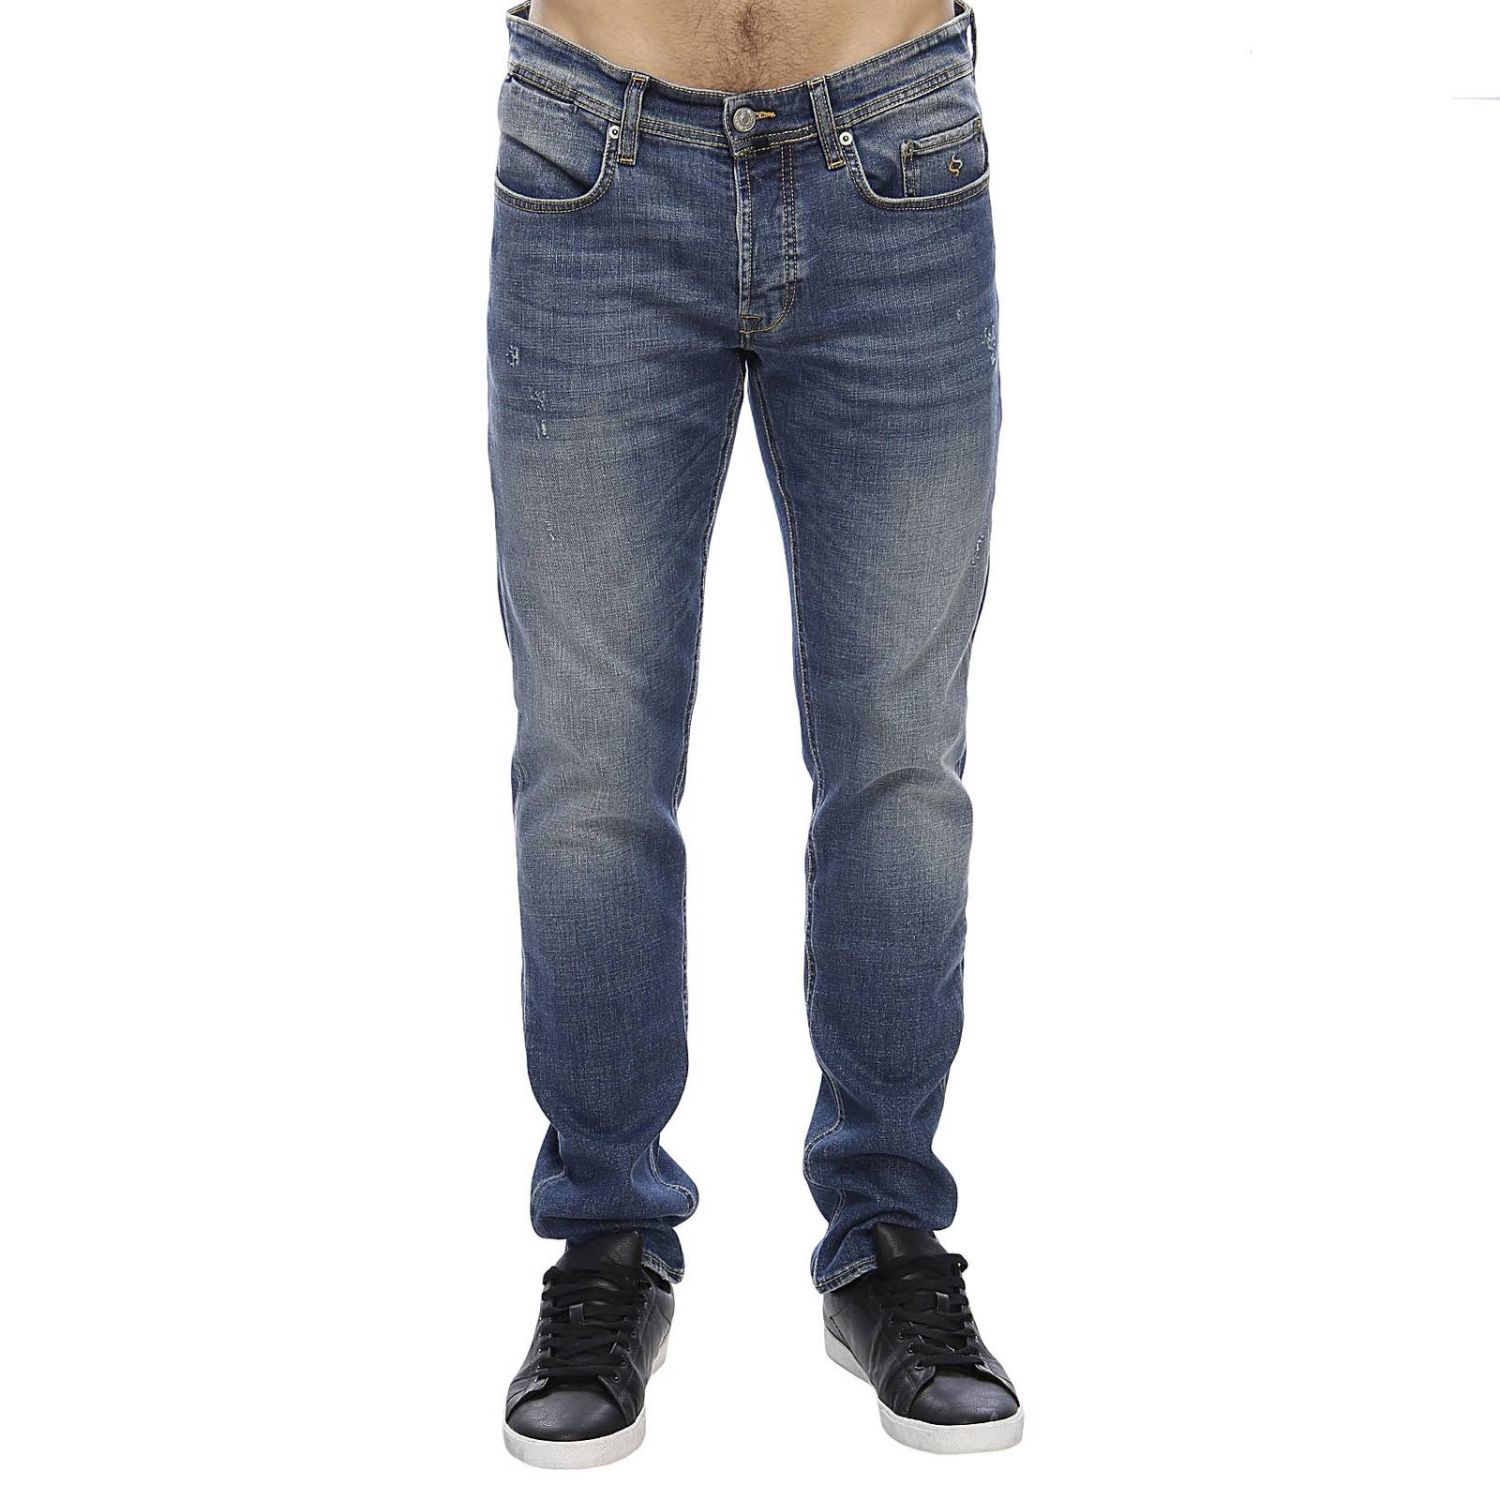 Siviglia Outlet: Jeans men - Denim | Jeans Siviglia 22Q3 S413 GIGLIO.COM